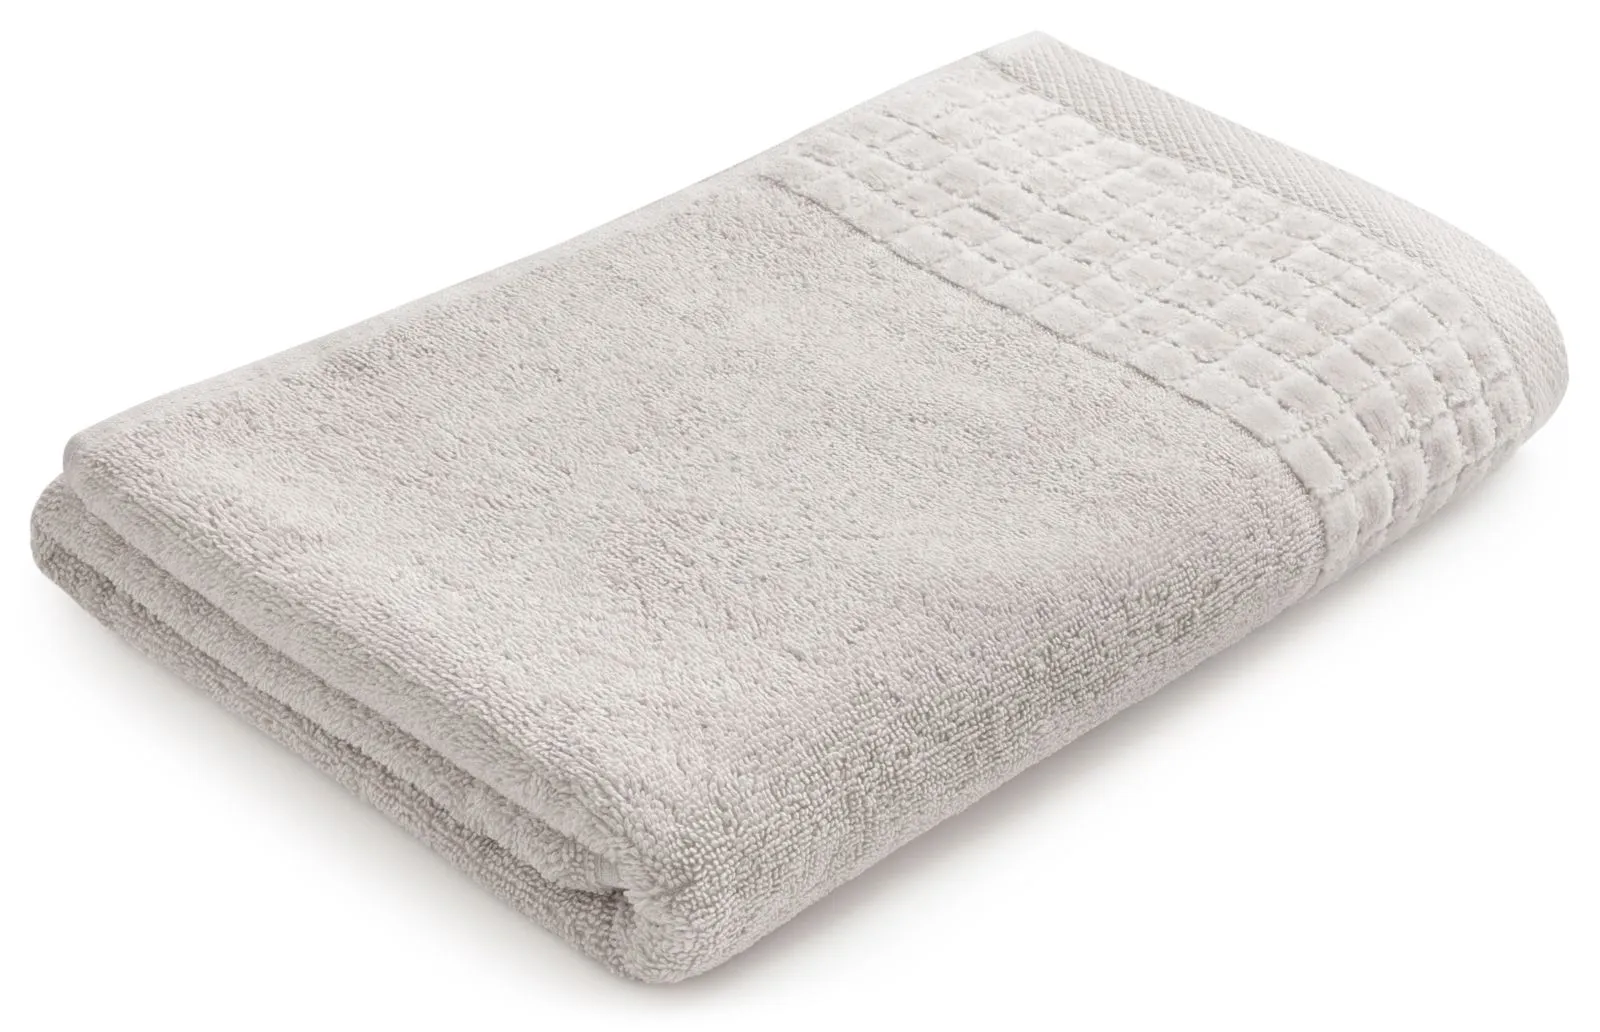 Gruby i miękki ręcznik kąpielowy 140×70 cm Larissa sepia/ jasny szary 500 g/m²